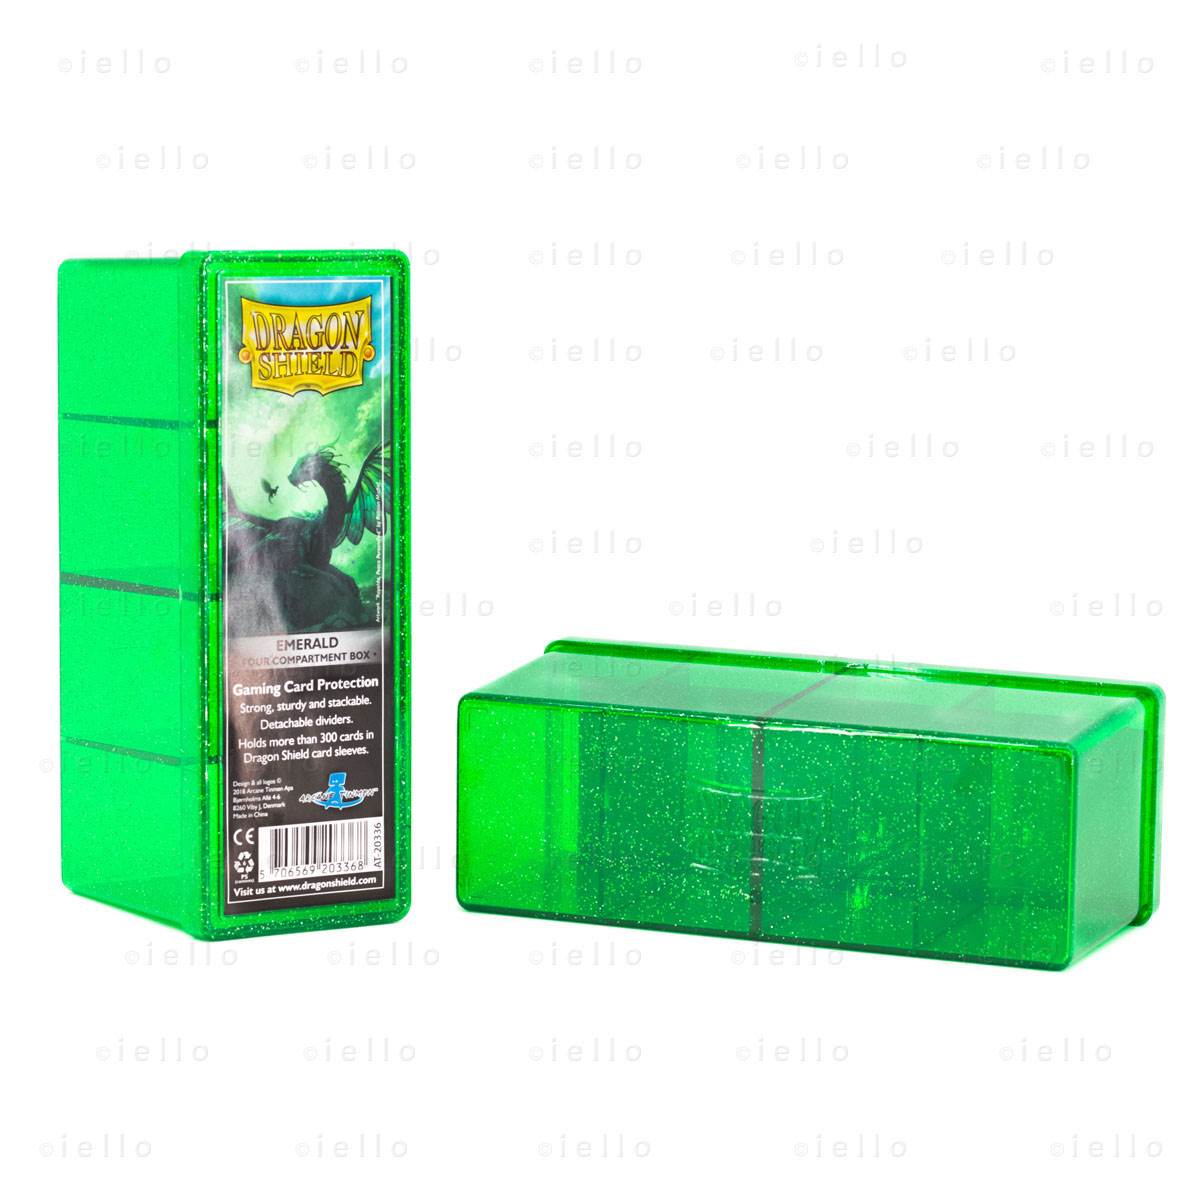 Dragon Shield Four Compartment Box Emerald